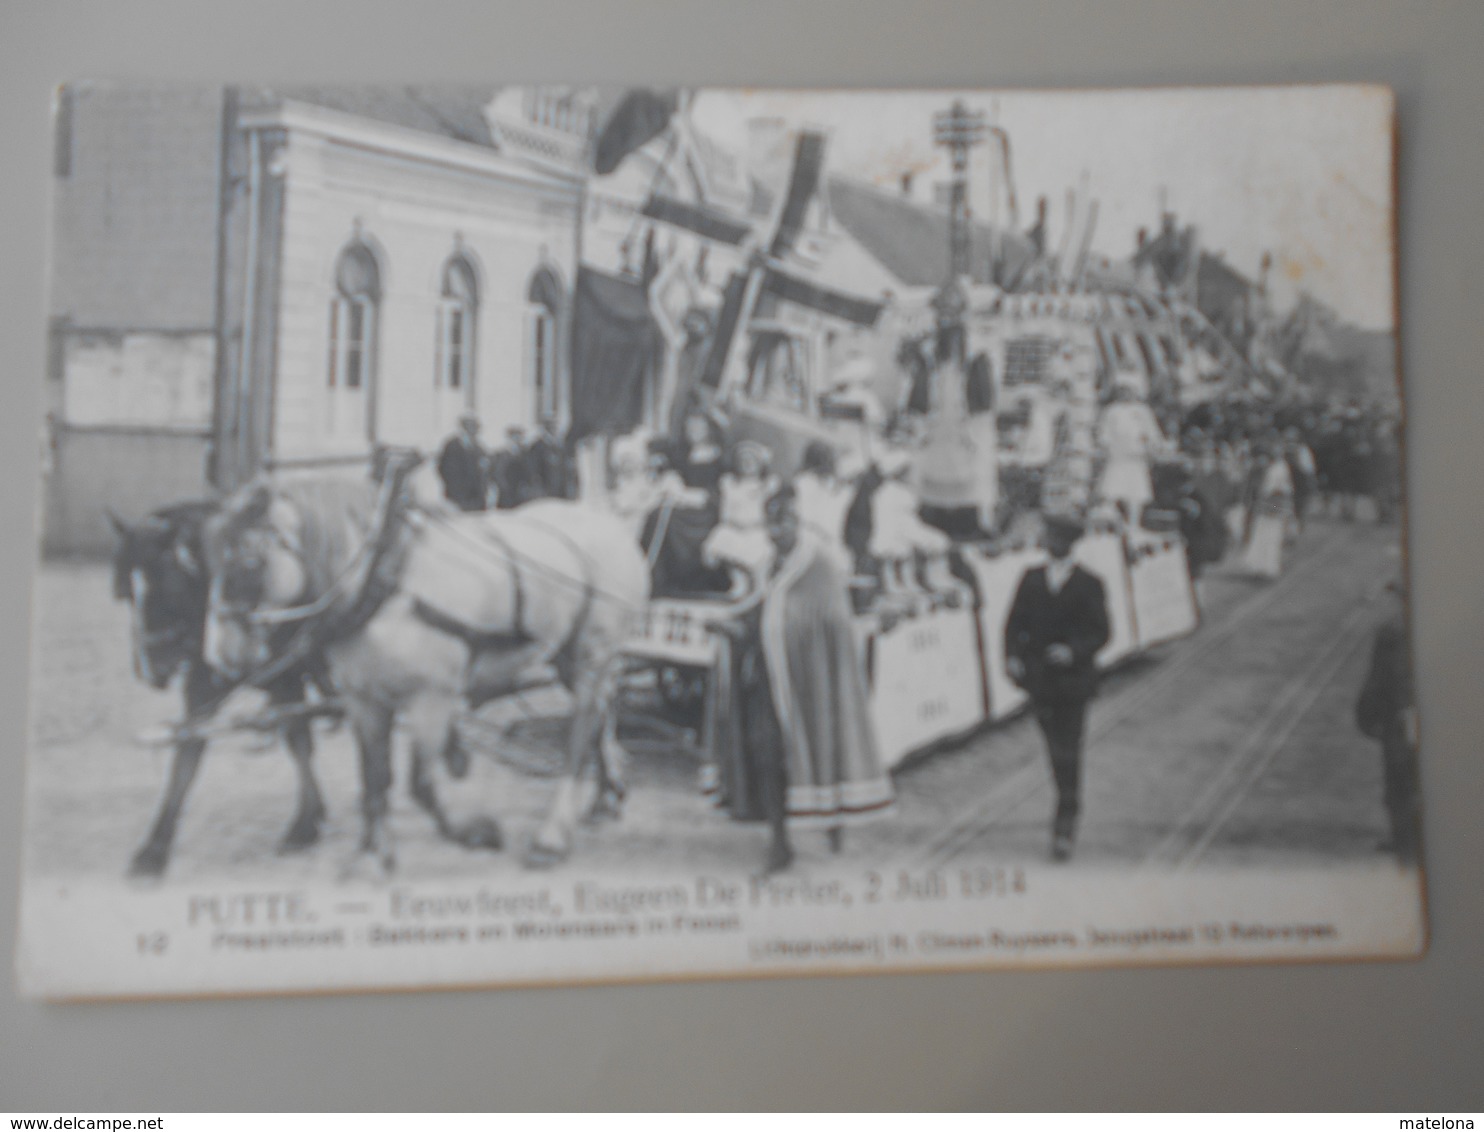 BELGIQUE ANVERS PUTTE FEUWFEEST,EUGEEN DE PRETER, 2 JULI 1914 PRAALSTOET BAKKERS EN MOLENAARS IN FEEST - Putte